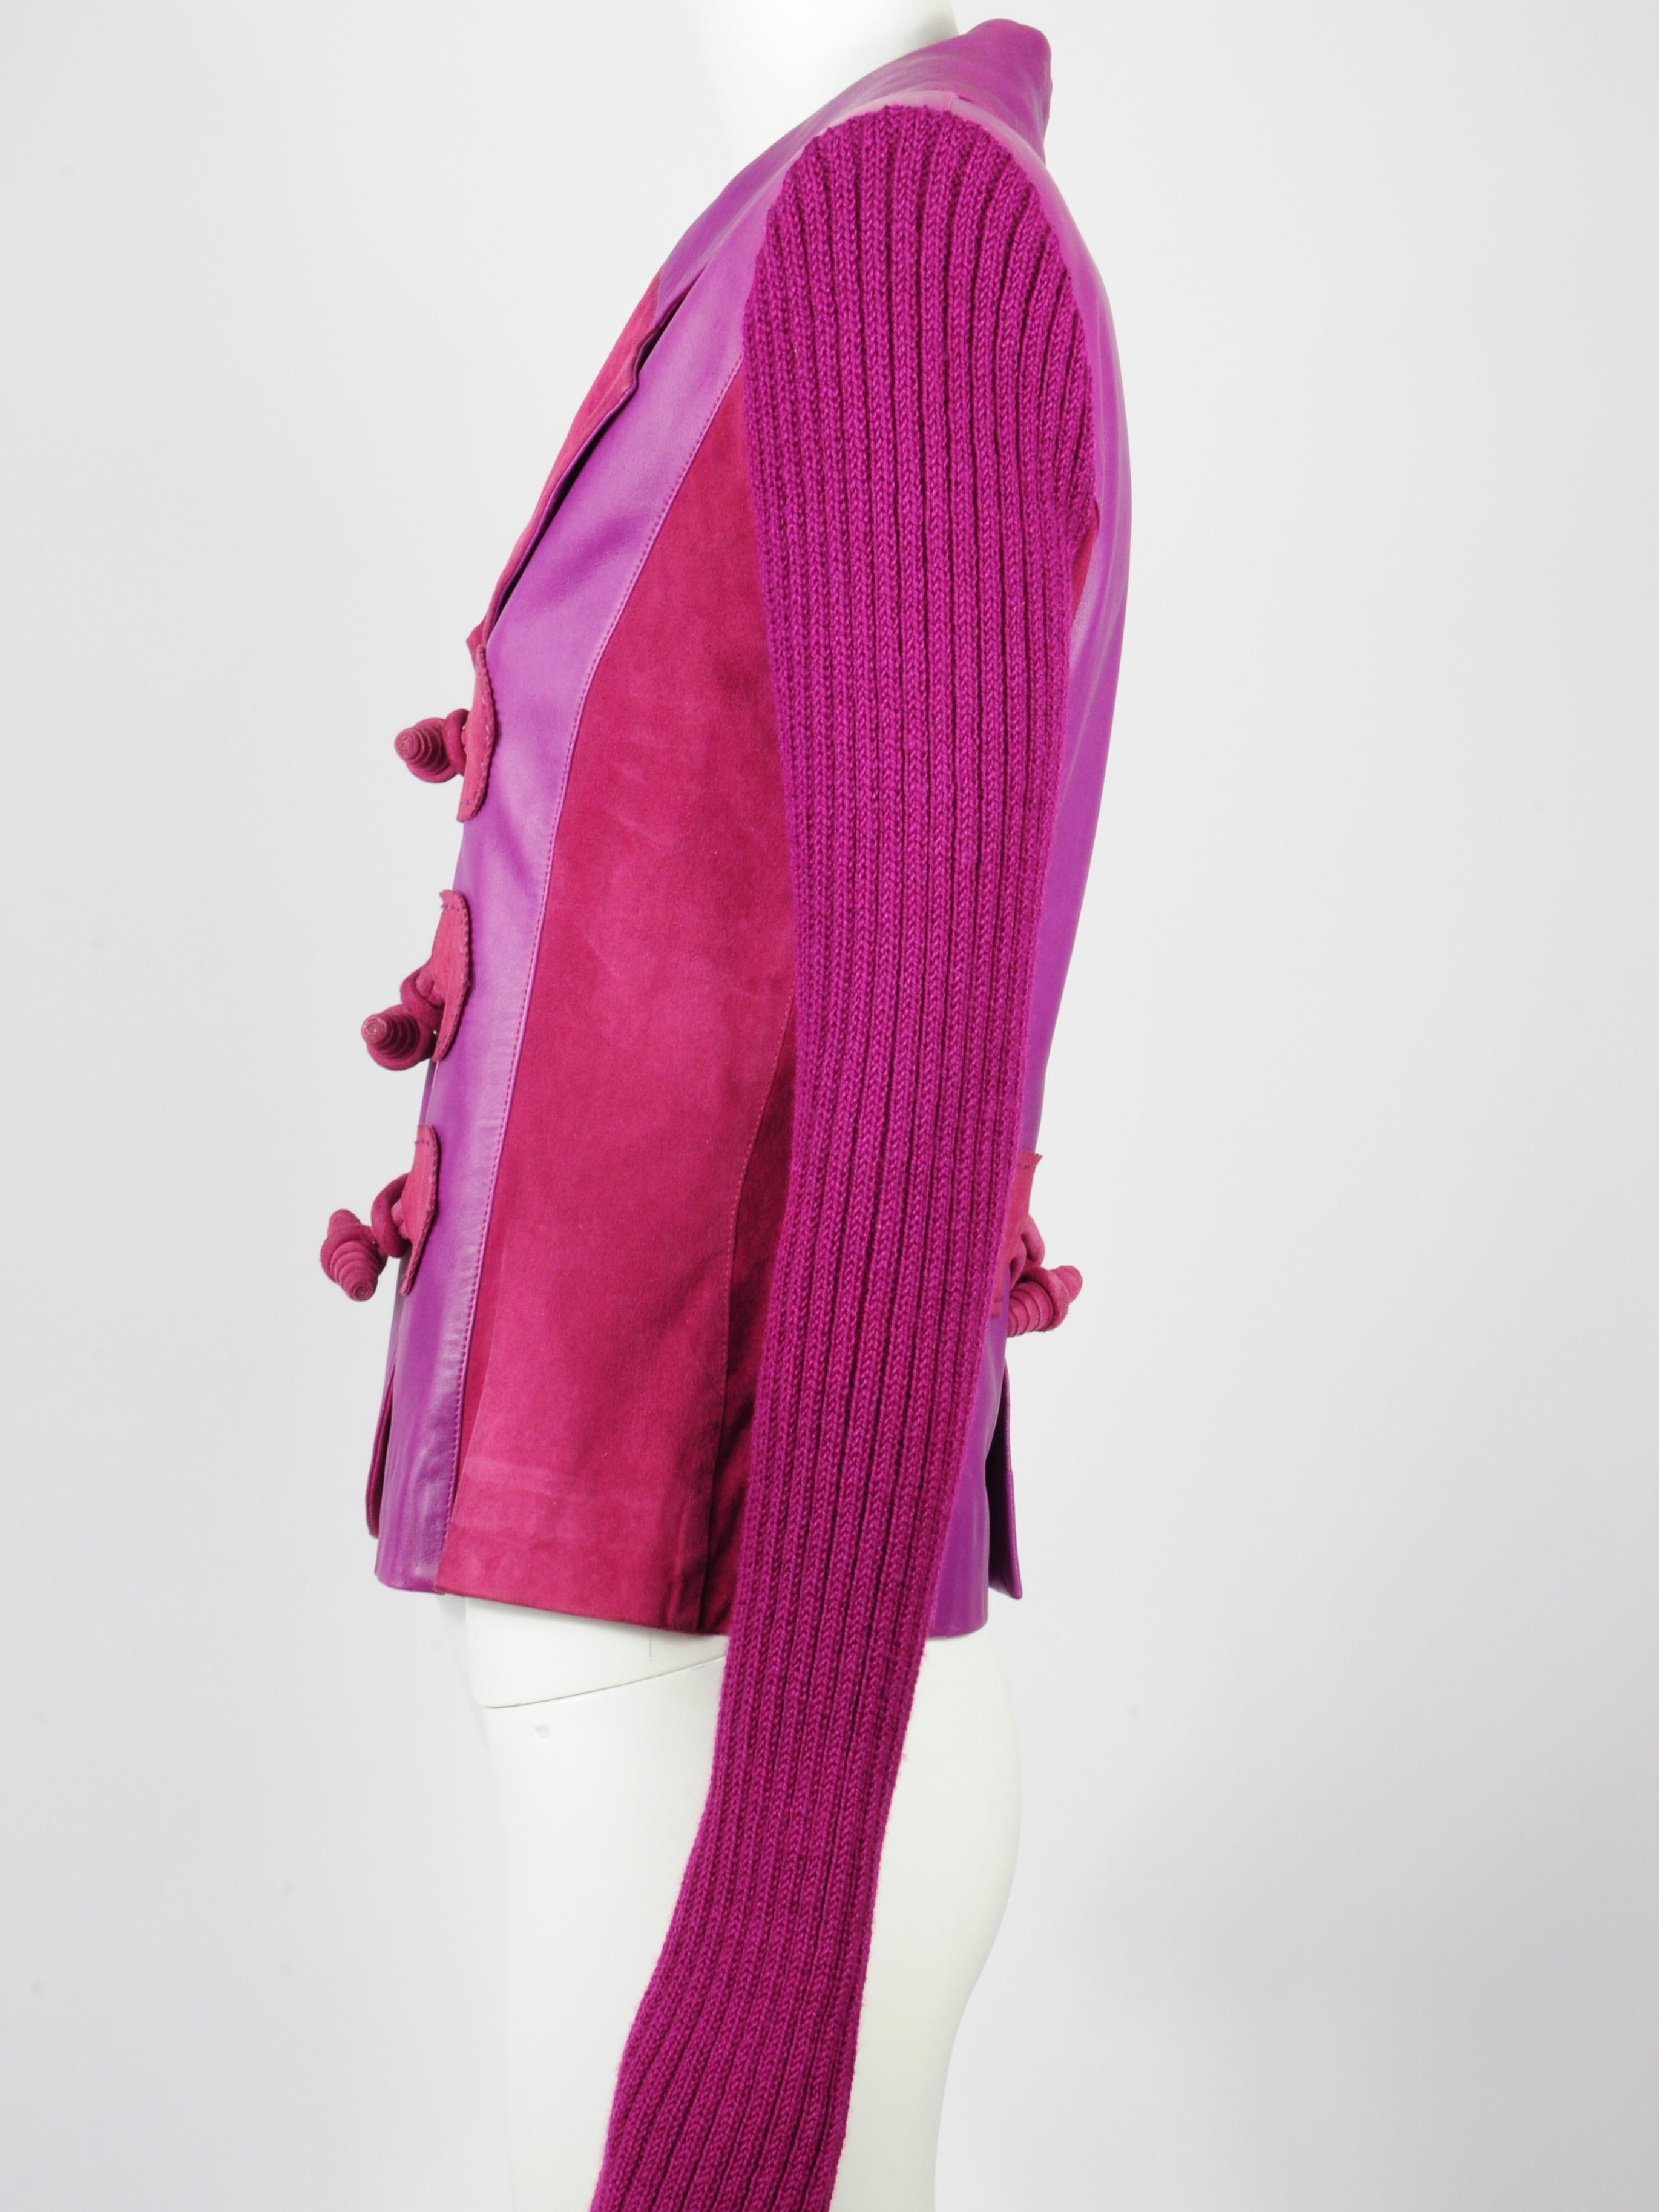 Women's Elizabeth Wessel Monte Carlo Leather and Knitwear Purple Blazer 1980s For Sale